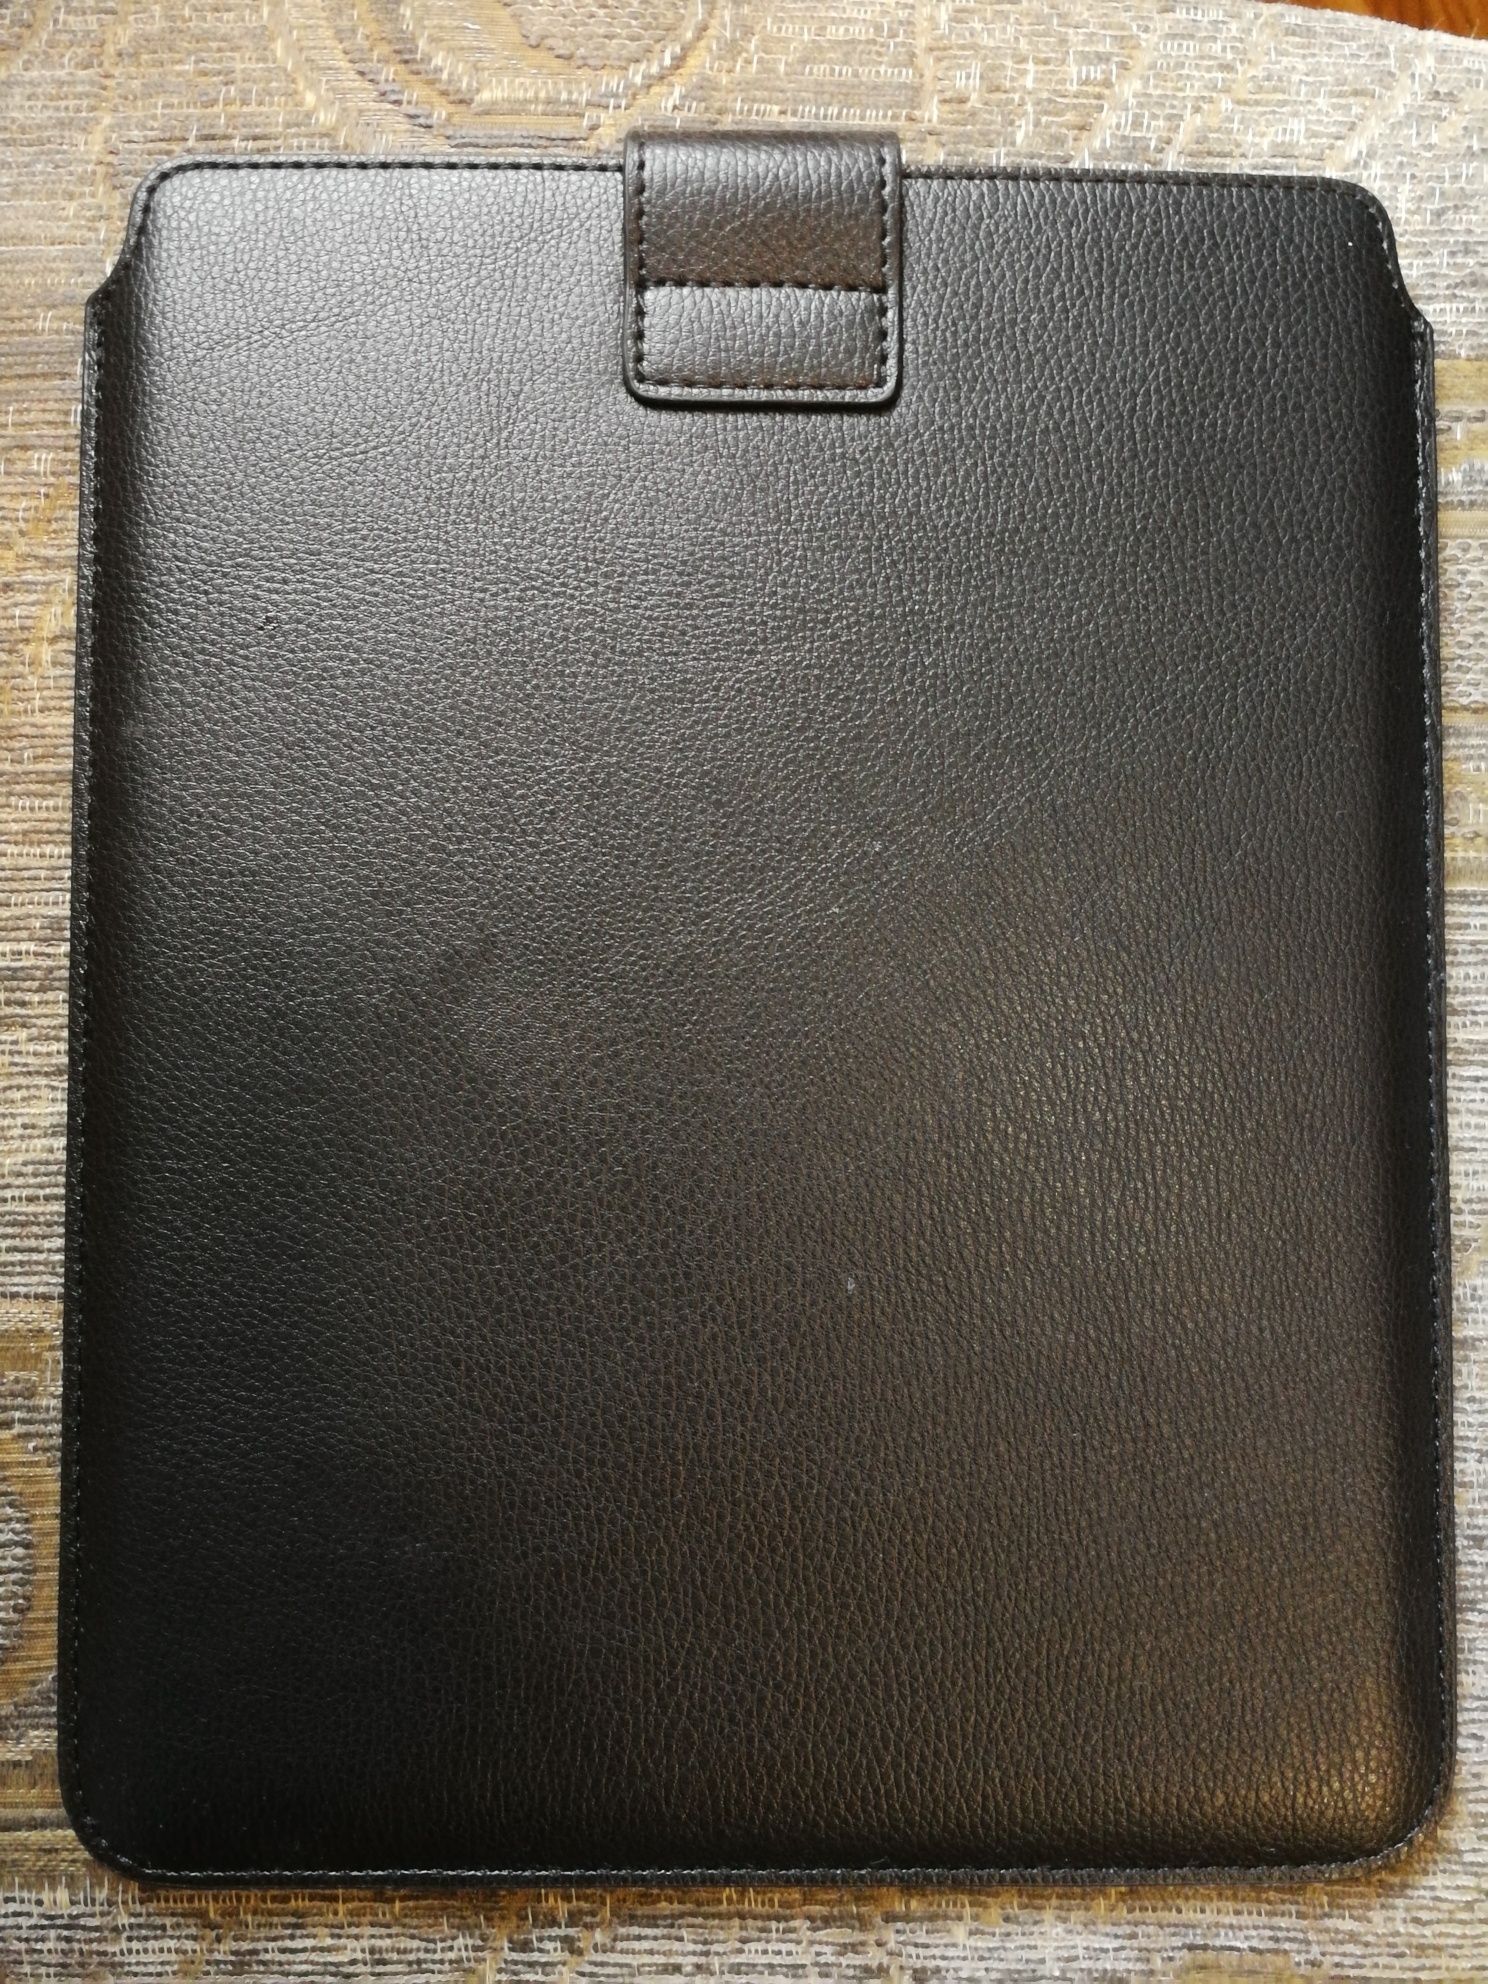 Husa piele pentru iPad sau tableta 10 inch